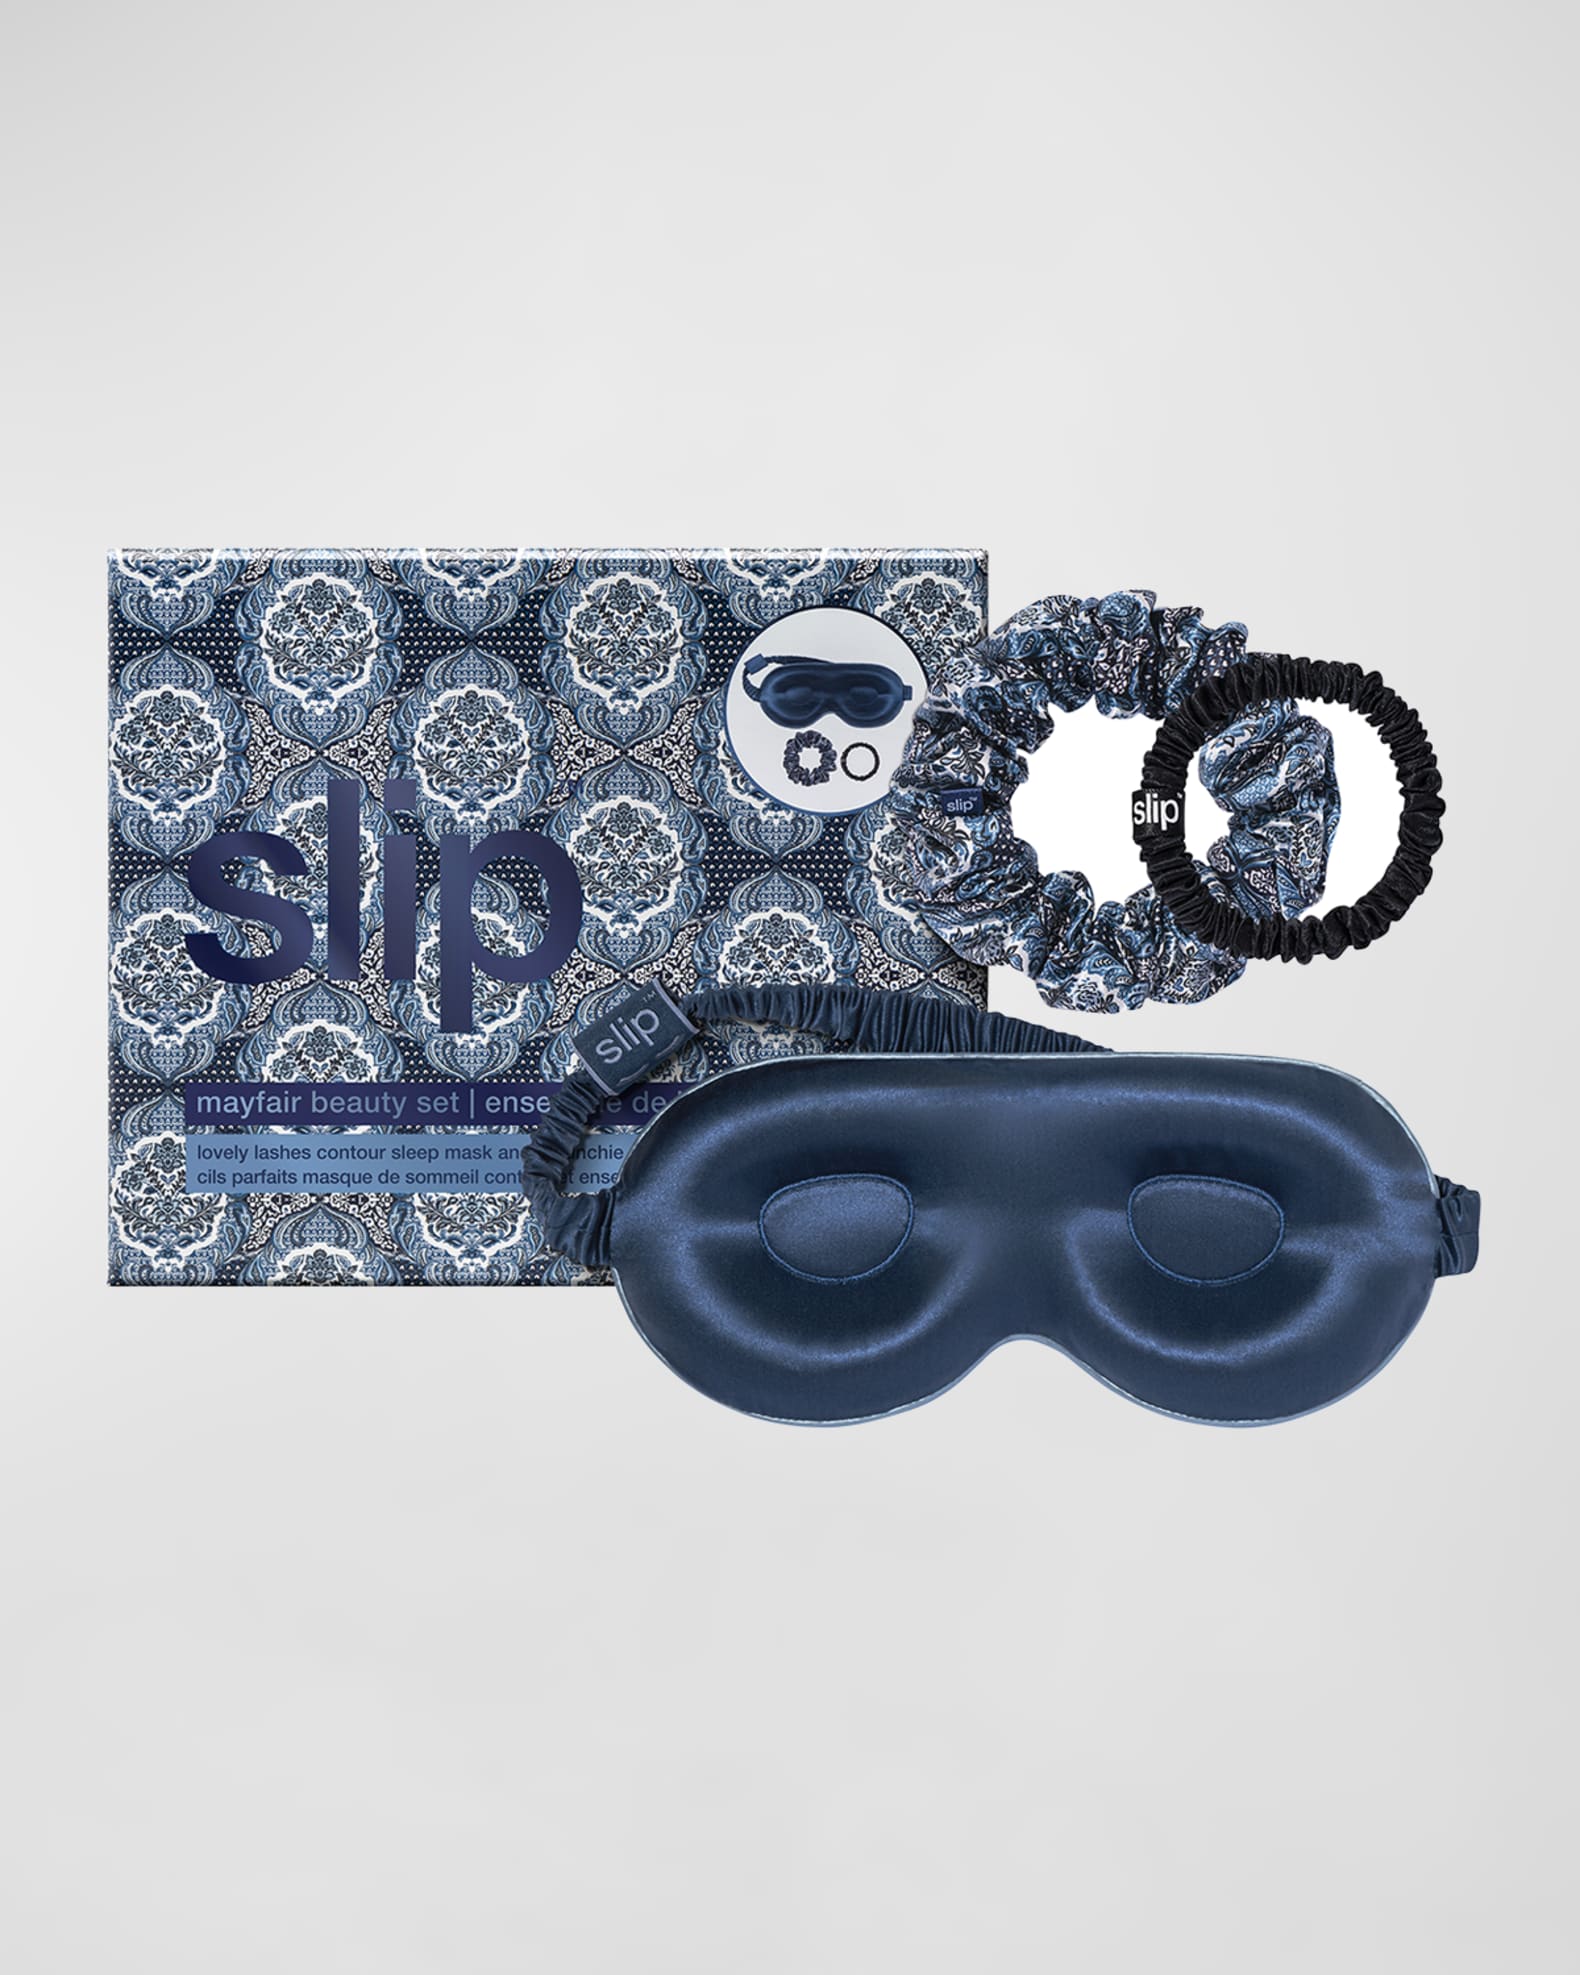 Slip Slip Beauty Sleepover Set - Mayfair | Neiman Marcus